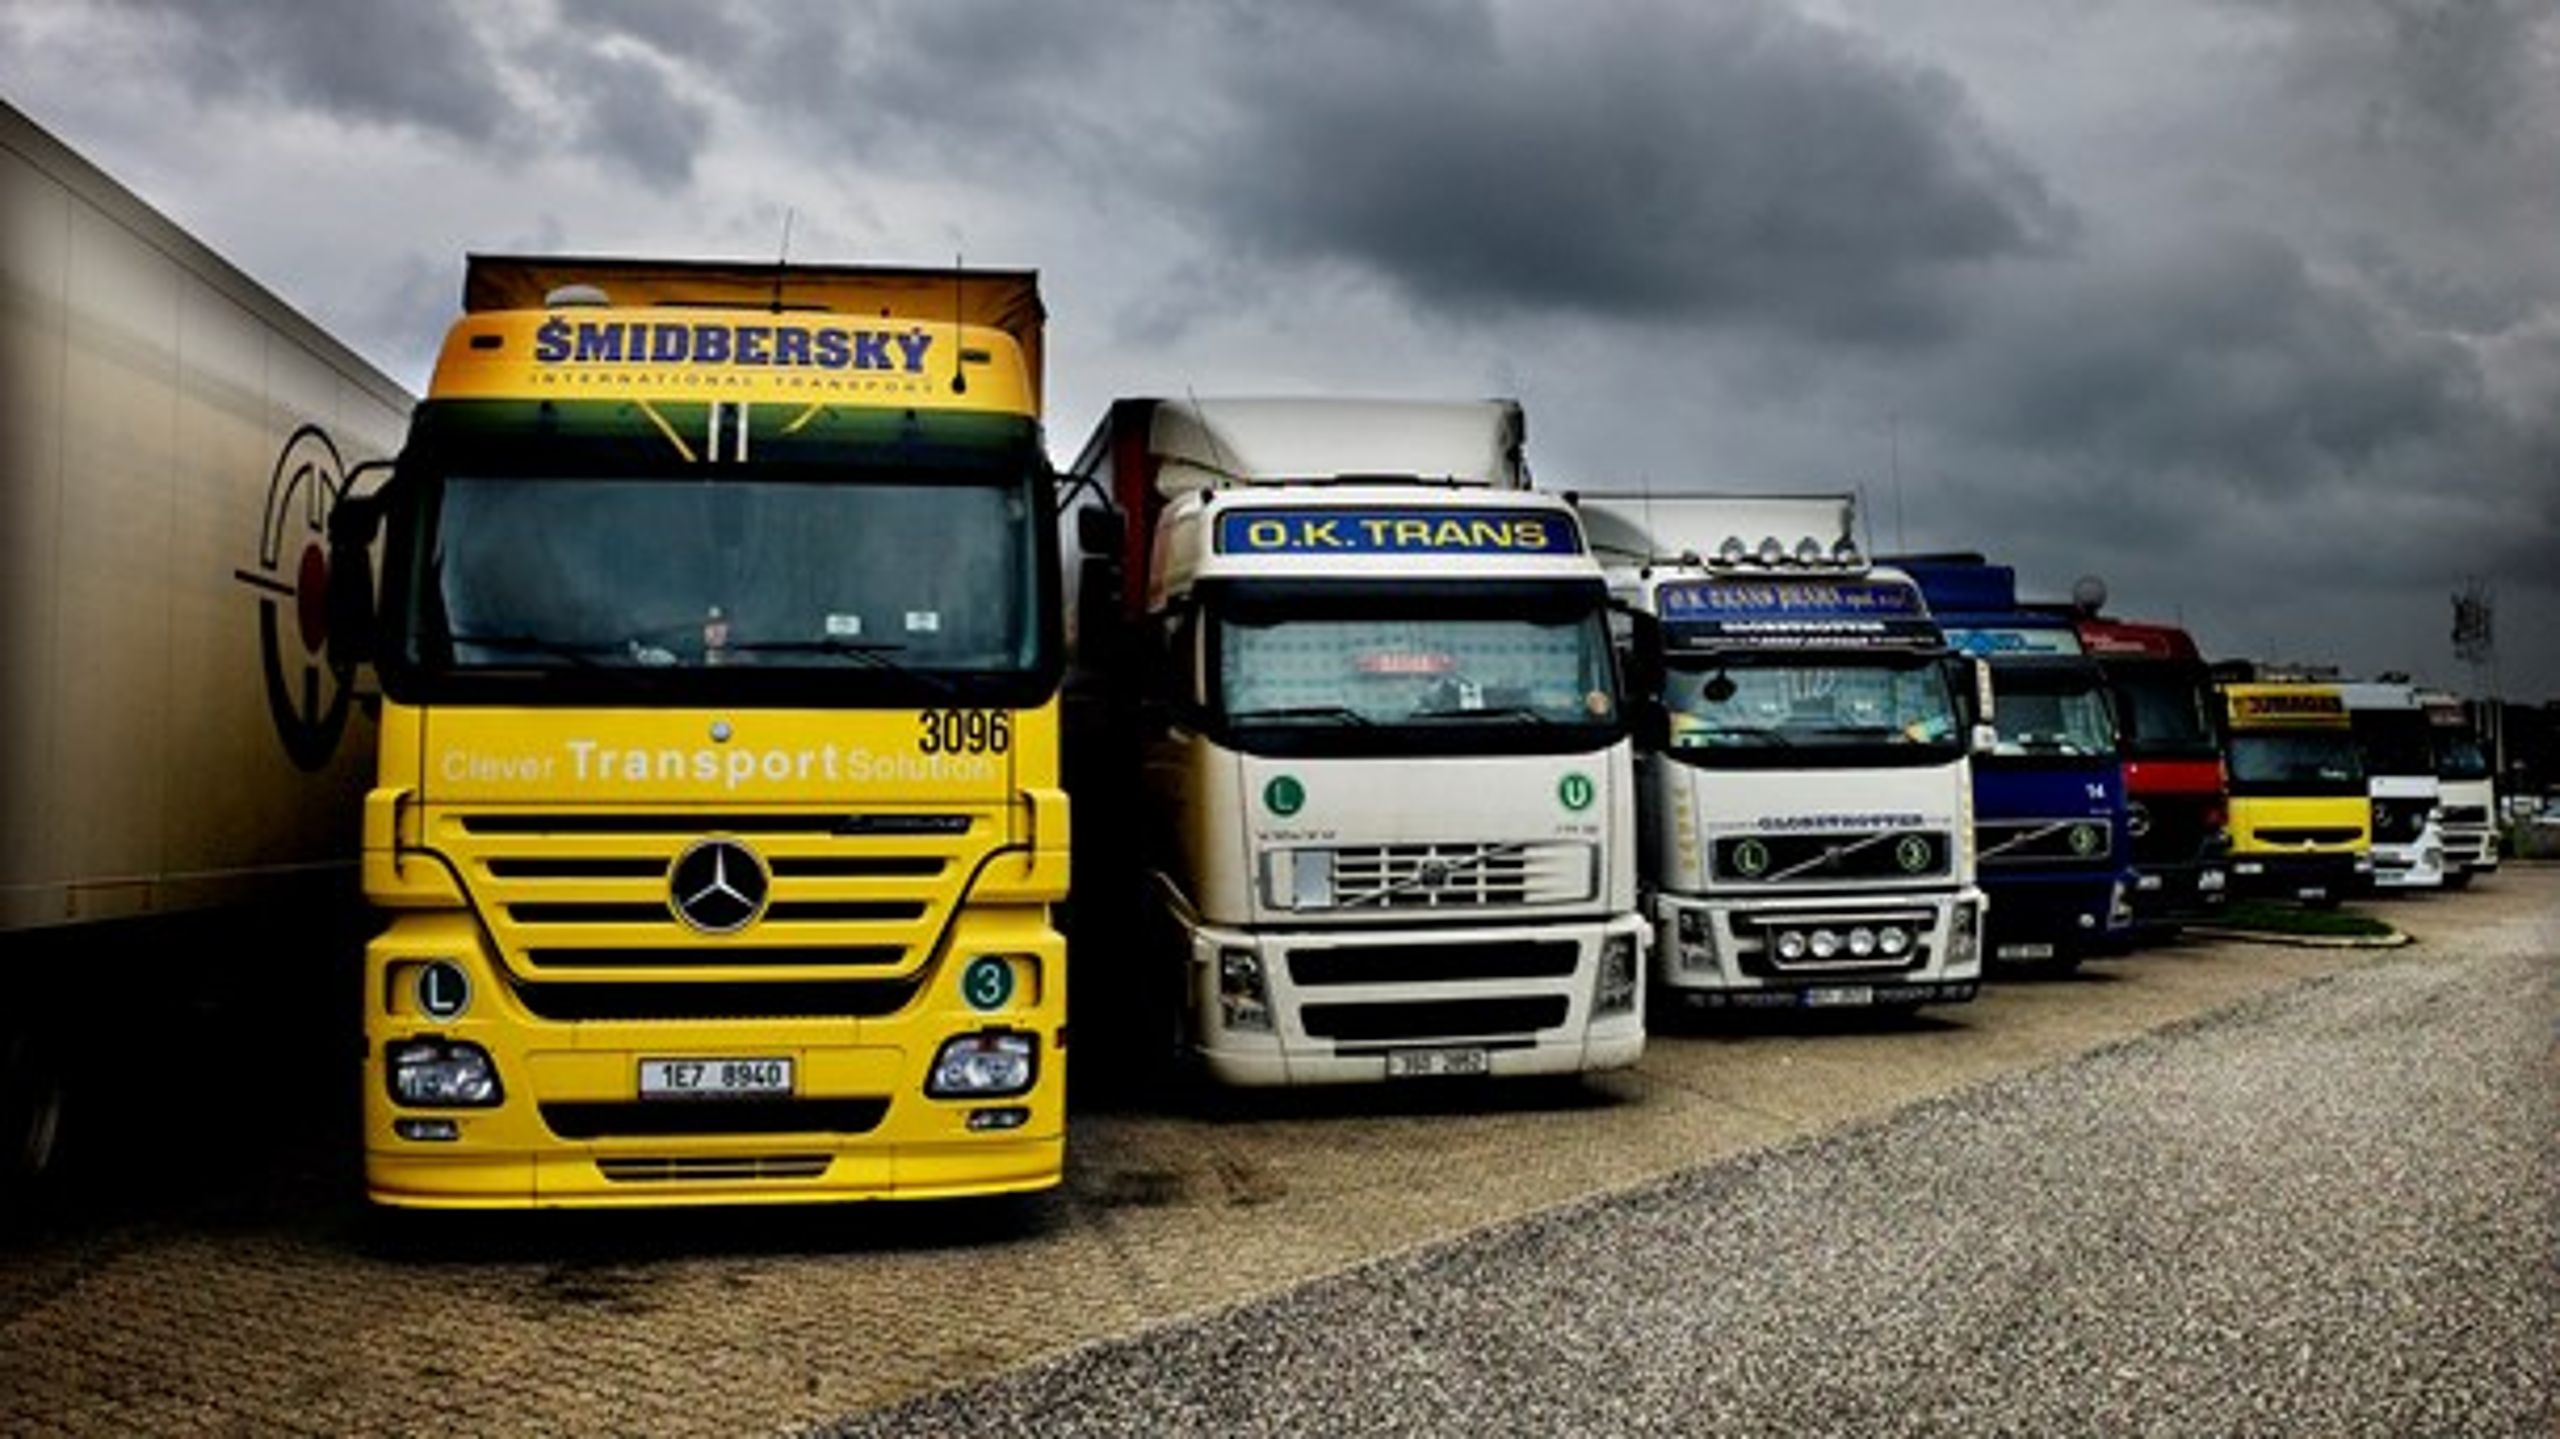 Godstransport i Danmark med udenlandske lastbiler udgør et uundværligt bidrag til at få vareflowet ind i og ud af Danmark til at glide. Derfor er parkeringsindgrebet bekymrende, skriver Martin Aabak.&nbsp;